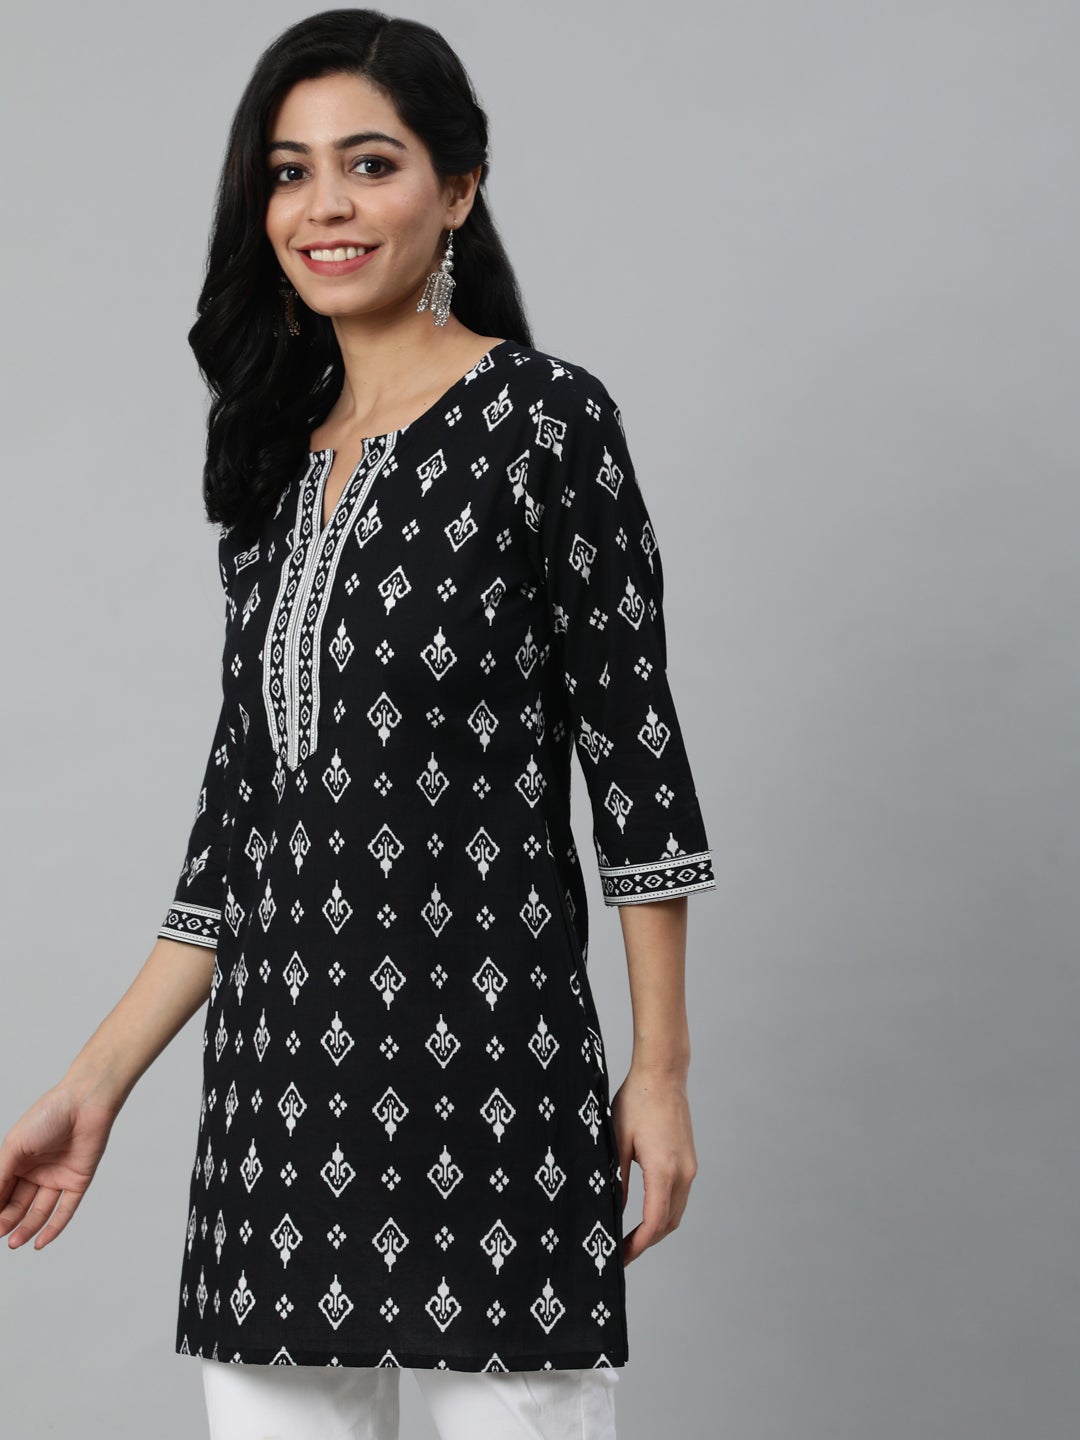 Women's Black & White Printed Cotton Tunic - Nayo Clothing USA